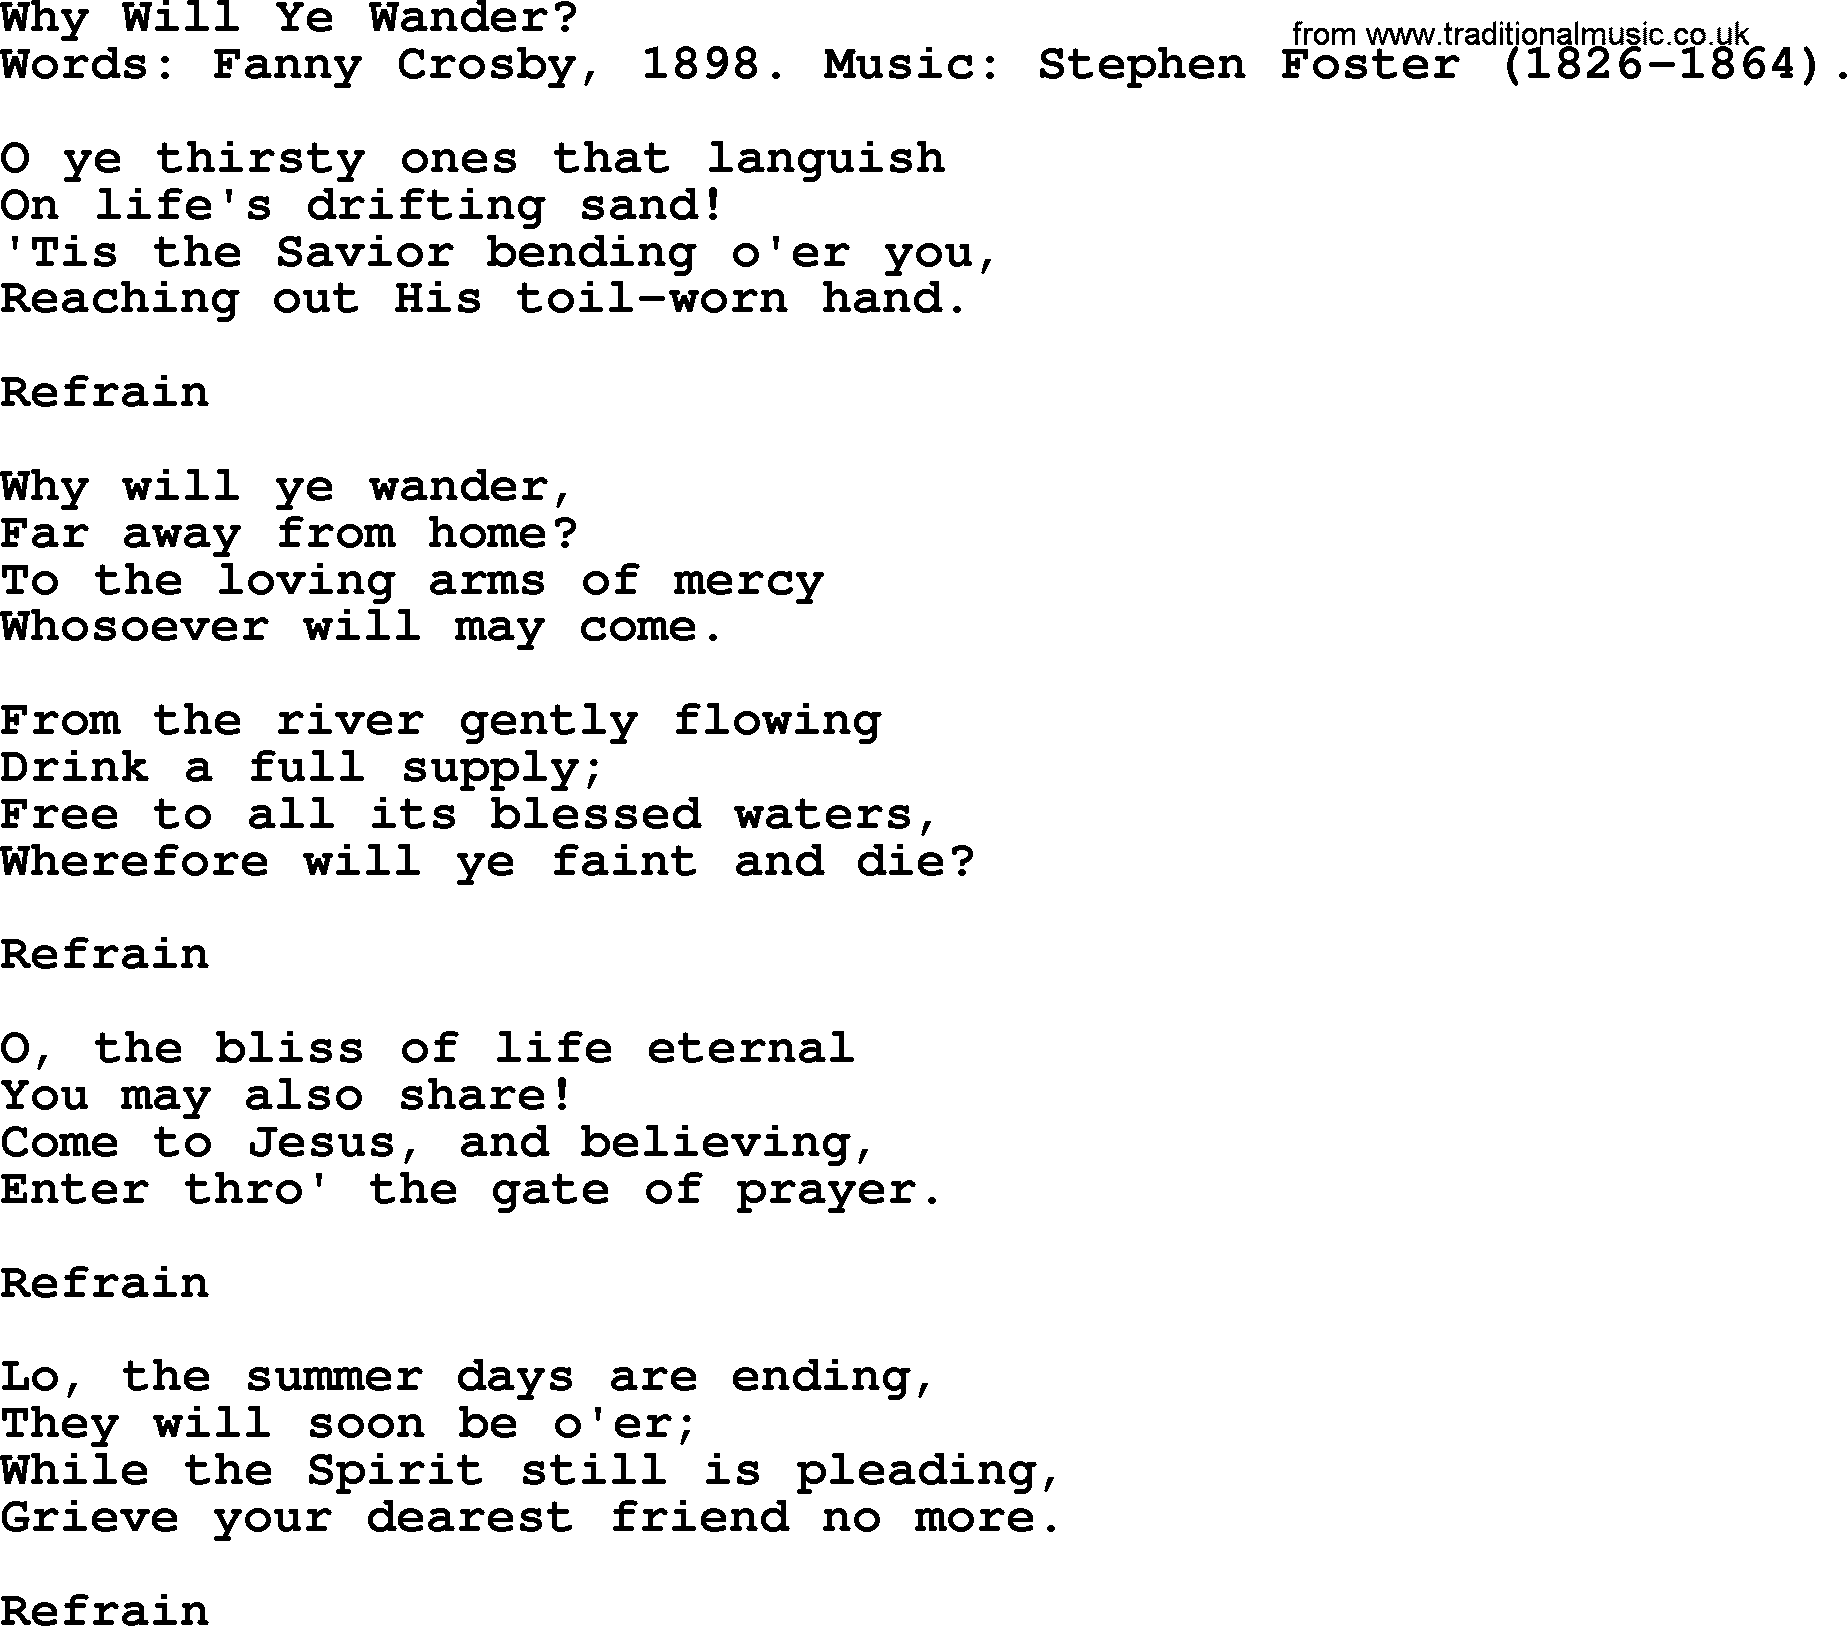 Fanny Crosby song: Why Will Ye Wander, lyrics